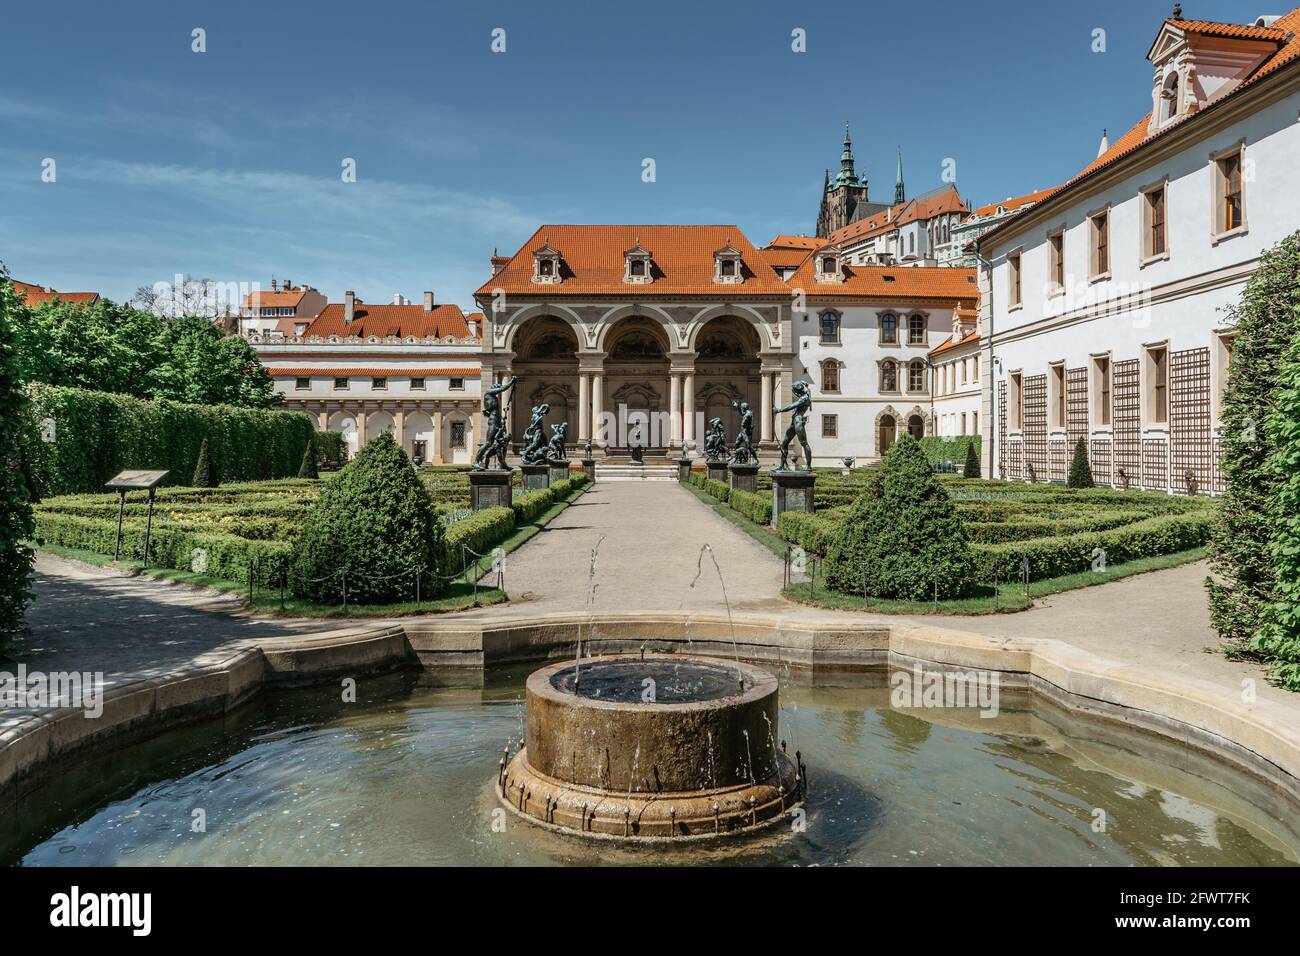 Wallenstein, Valdstejn, Giardino costruito in stile barocco con bella fontana.sede del Senato del Parlamento, Praga, Repubblica Ceca.Romantico Foto Stock